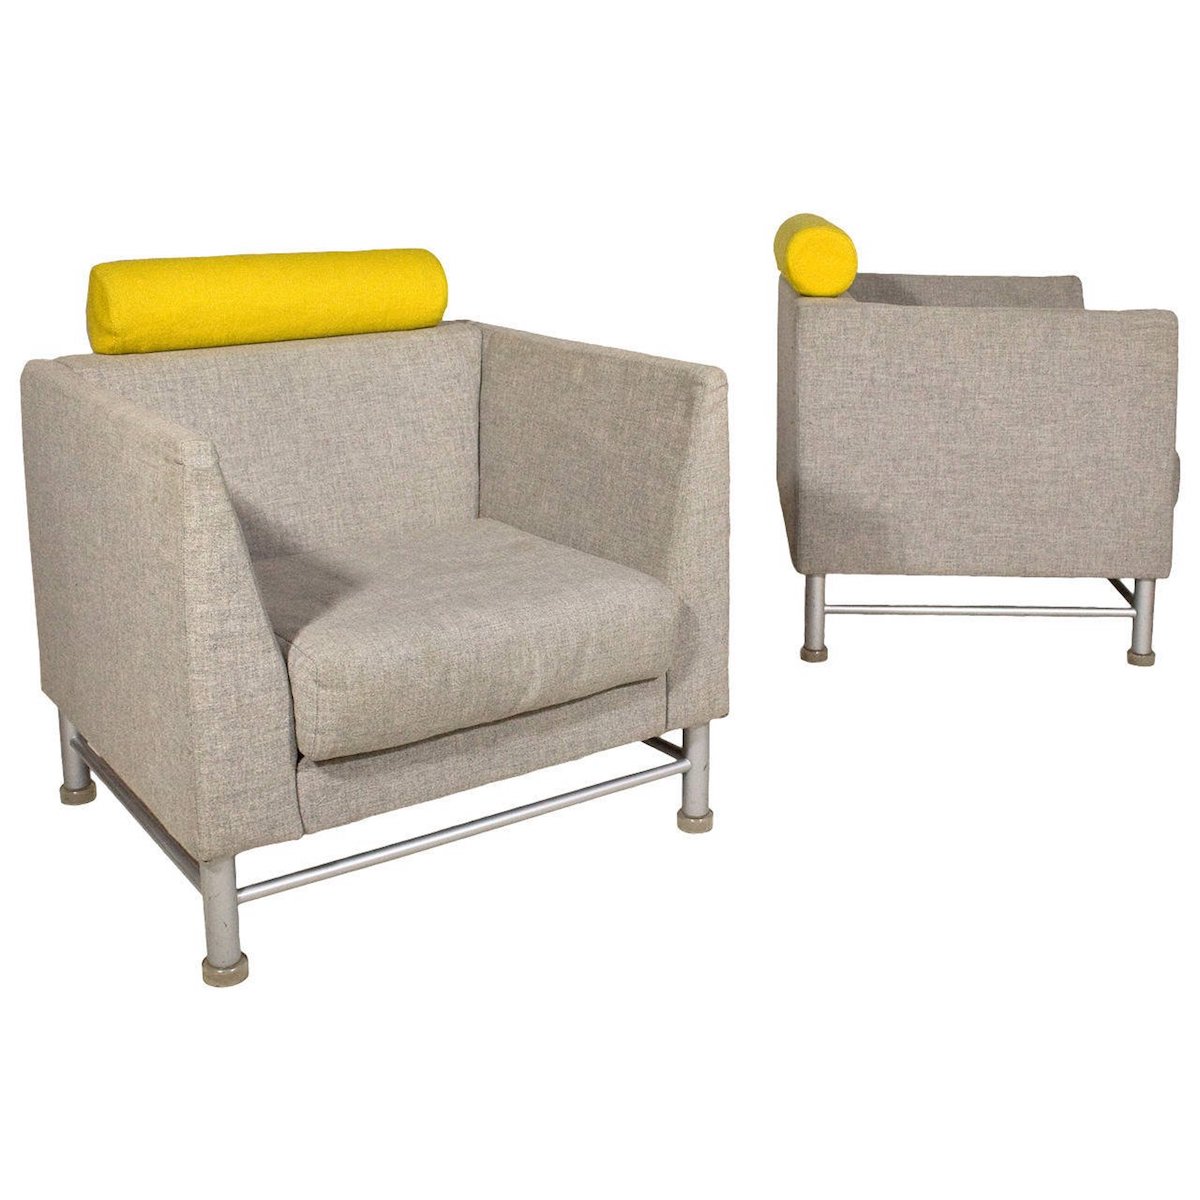 Modern Design Furniture